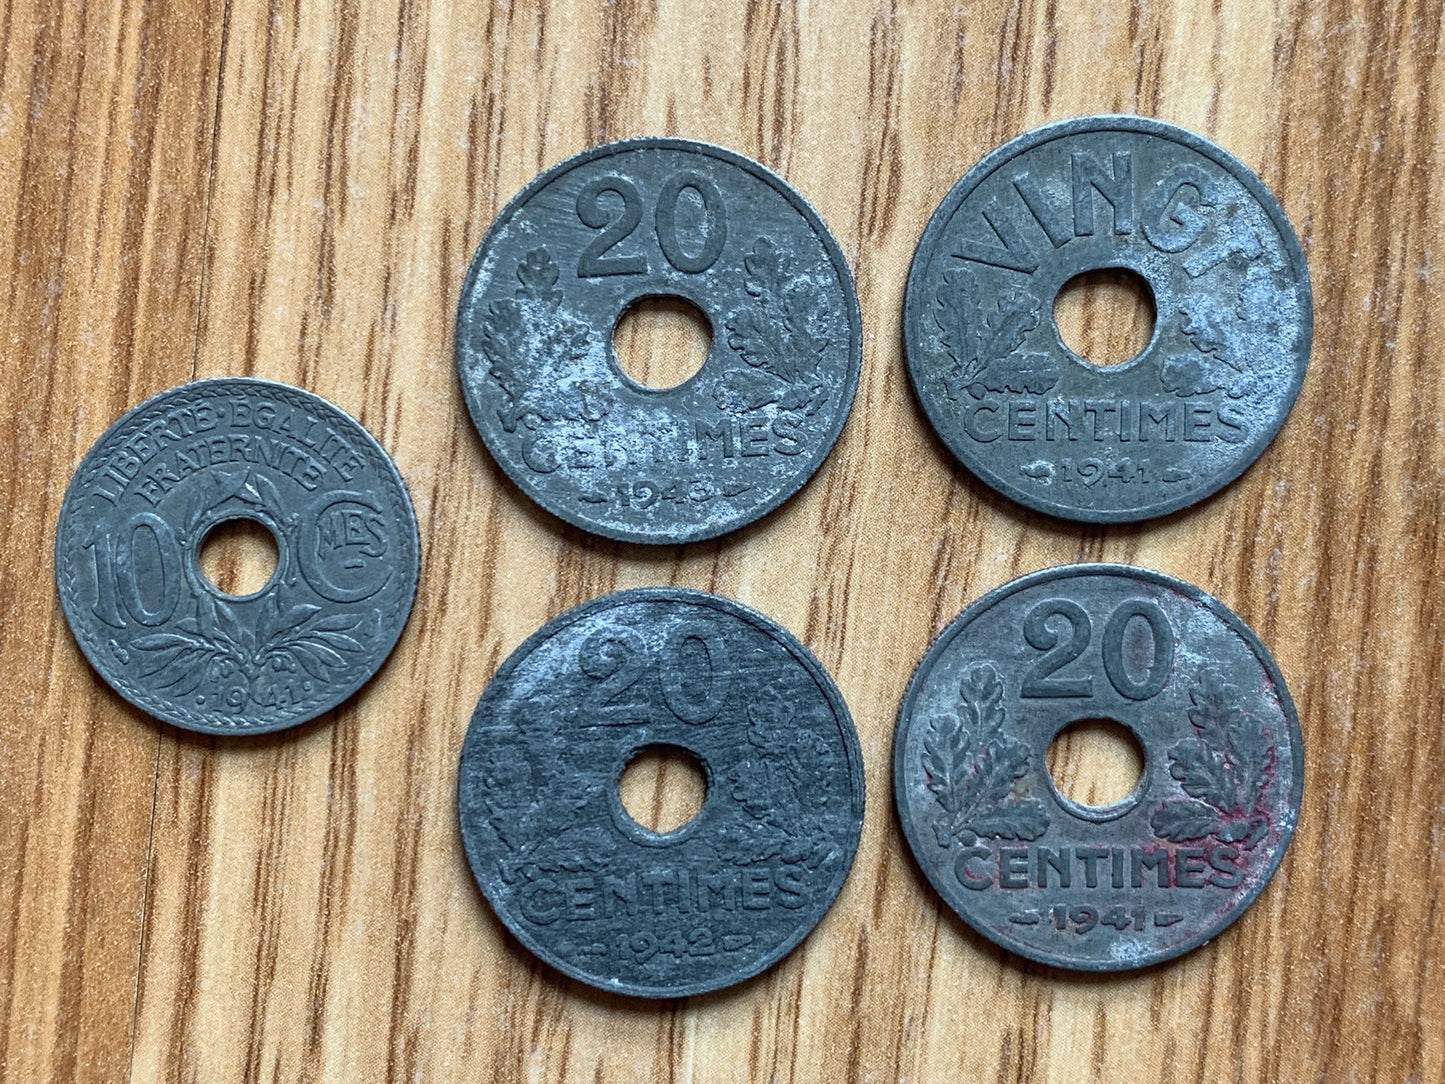 8 WW2 Vichy coins